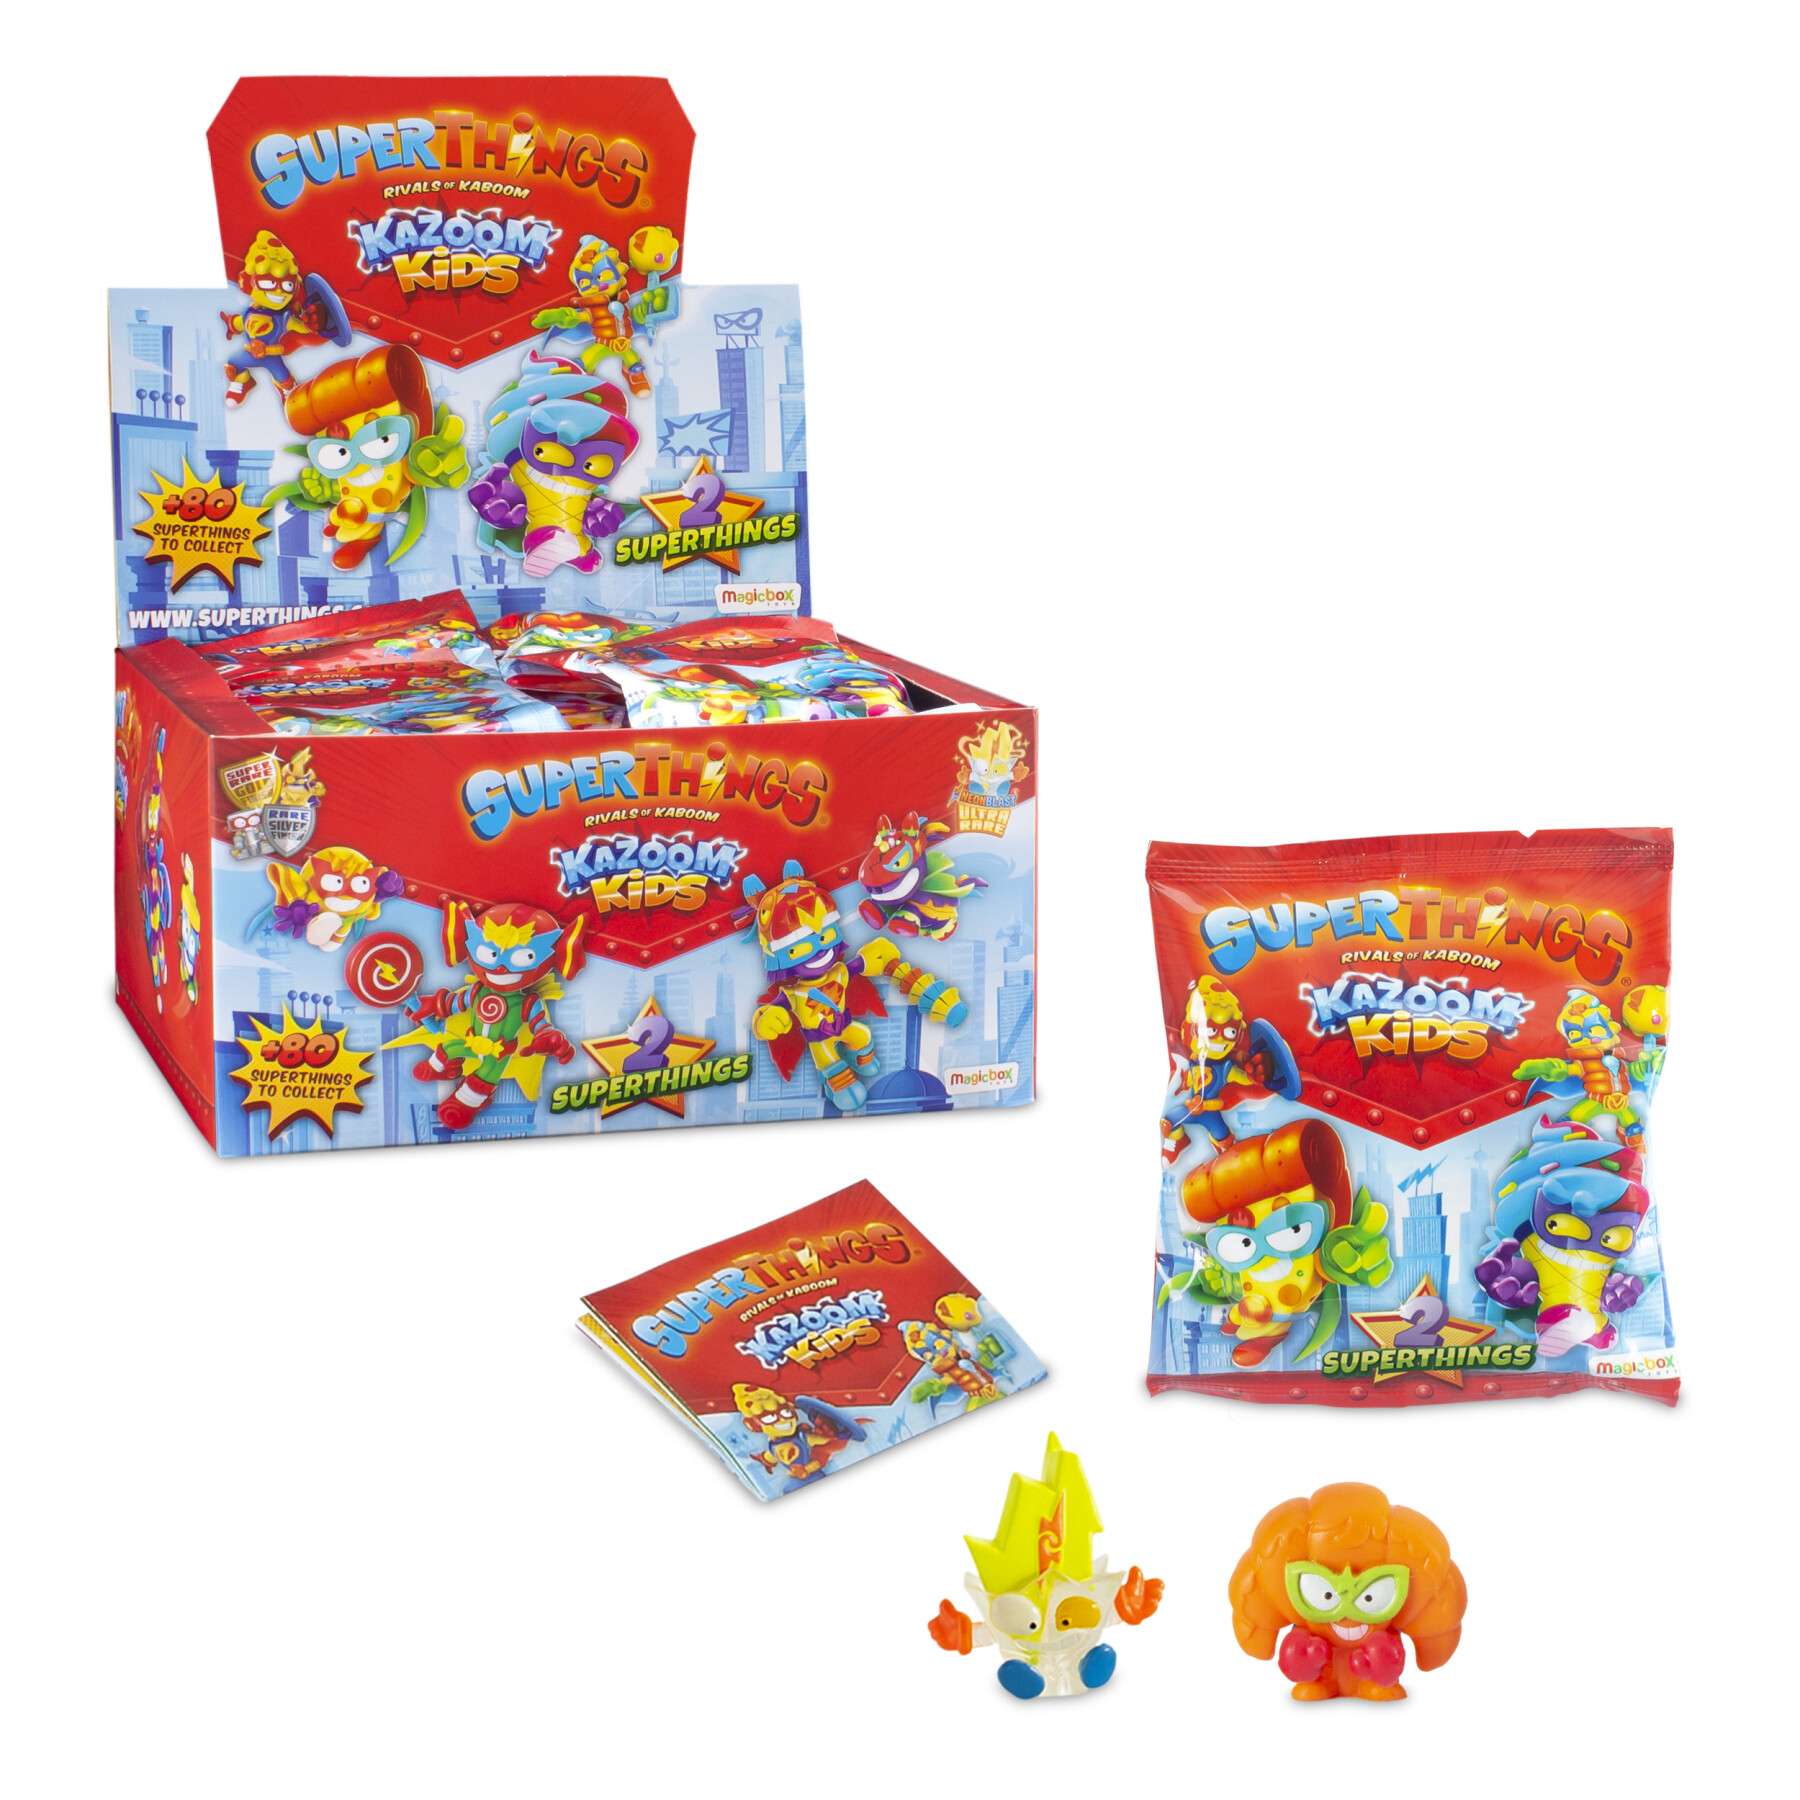 Superthings kazoom kids – two pack  confezione con 50 one packs con i personaggi della serie kazoom kids. ogni busta contiene 2 superthing e 1 checklist - SUPERZINGS